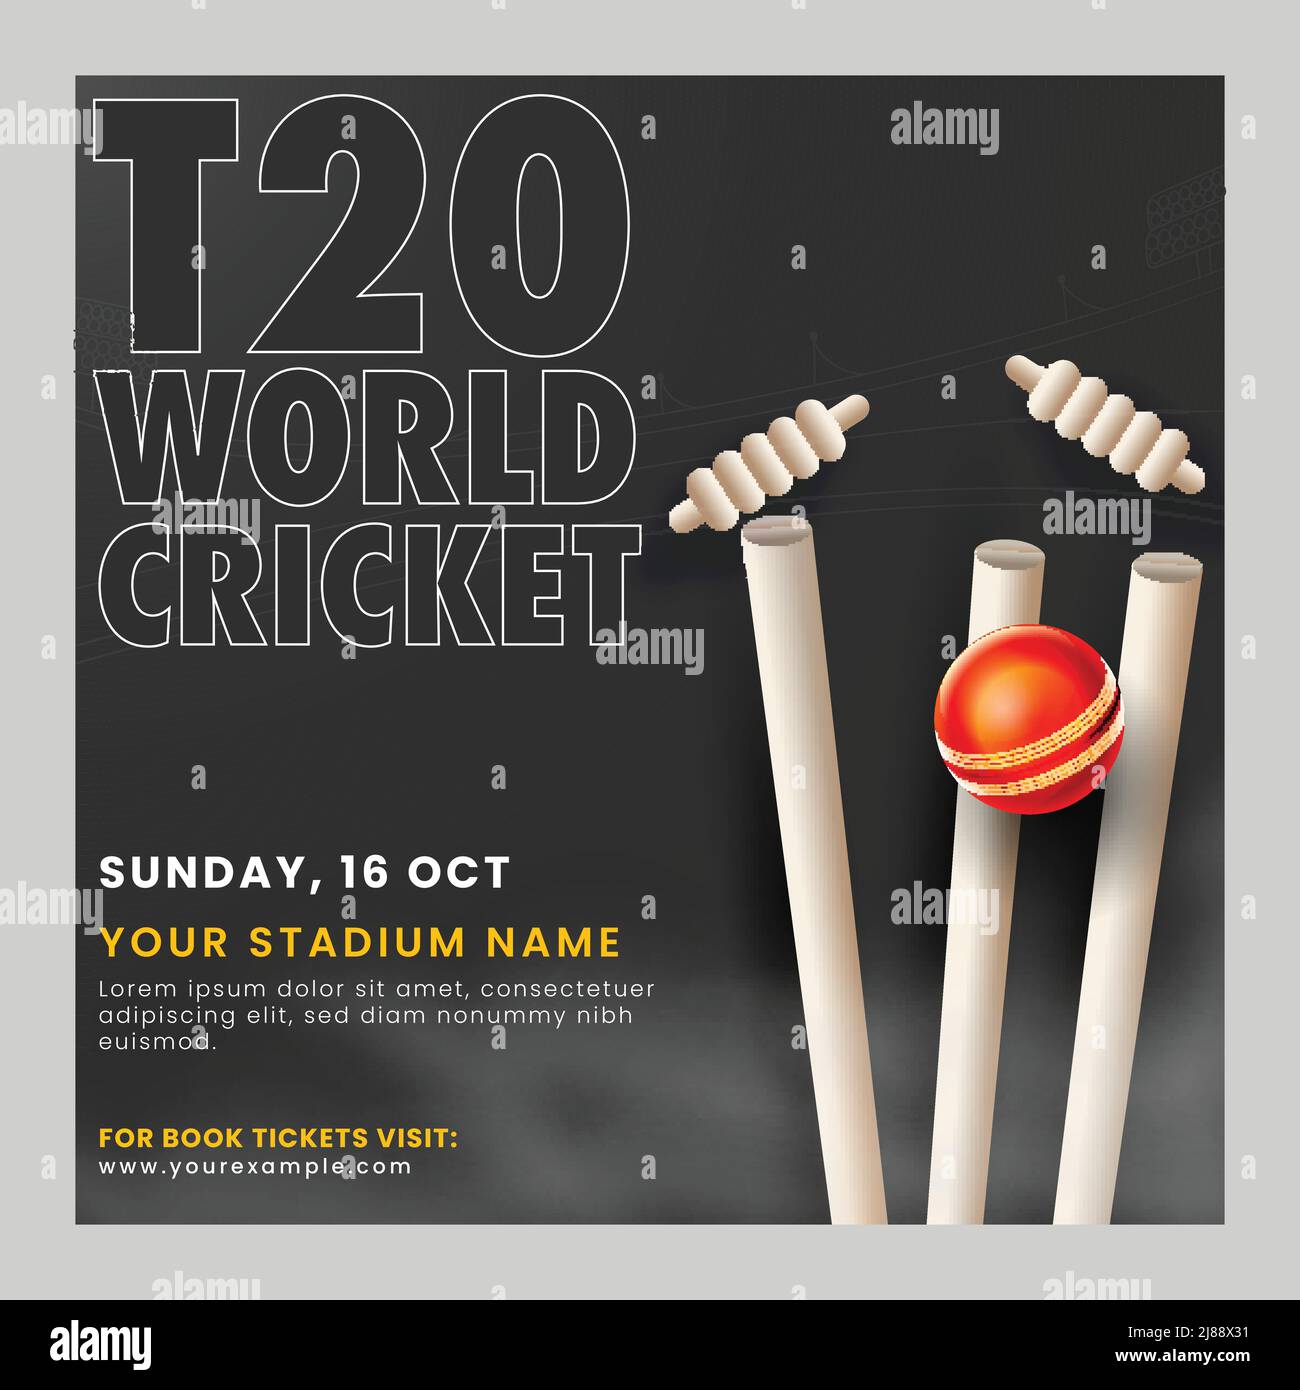 T20 World Cricket Match Poster oder Template Design mit realistischem Red Ball schlagen Wicket Stump auf schwarzem Hintergrund. Stock Vektor